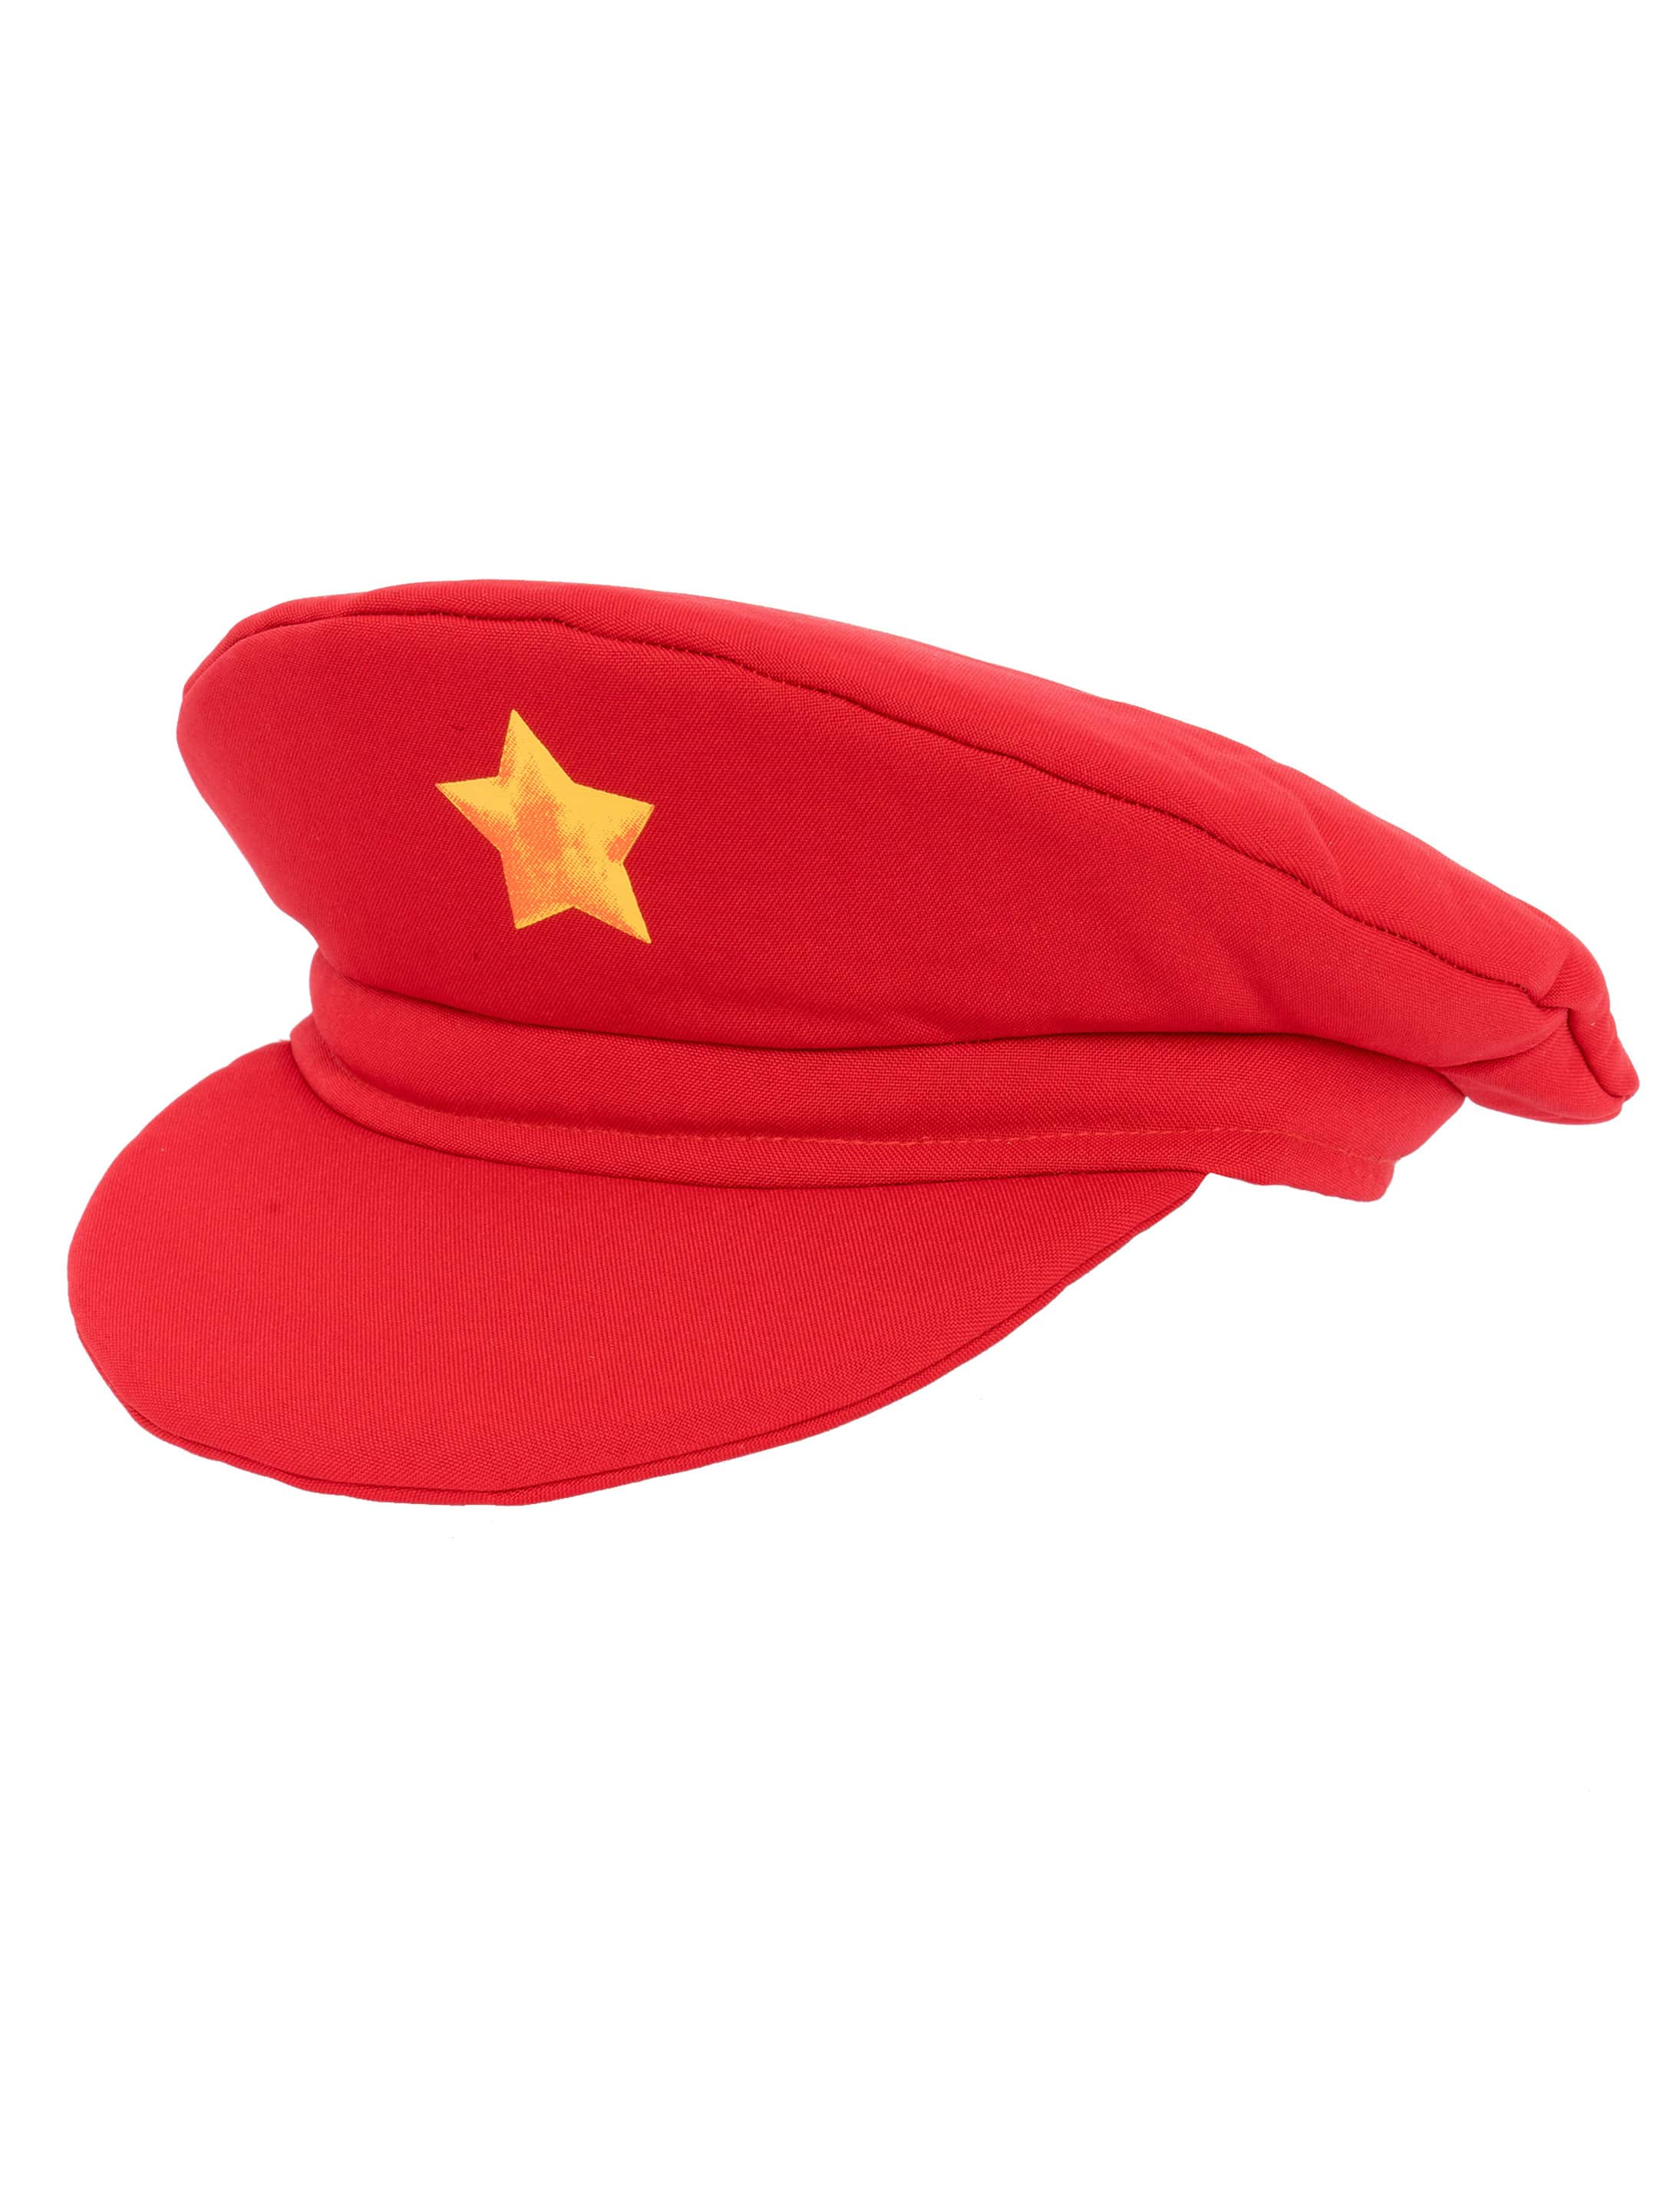 Mütze rot mit Stern